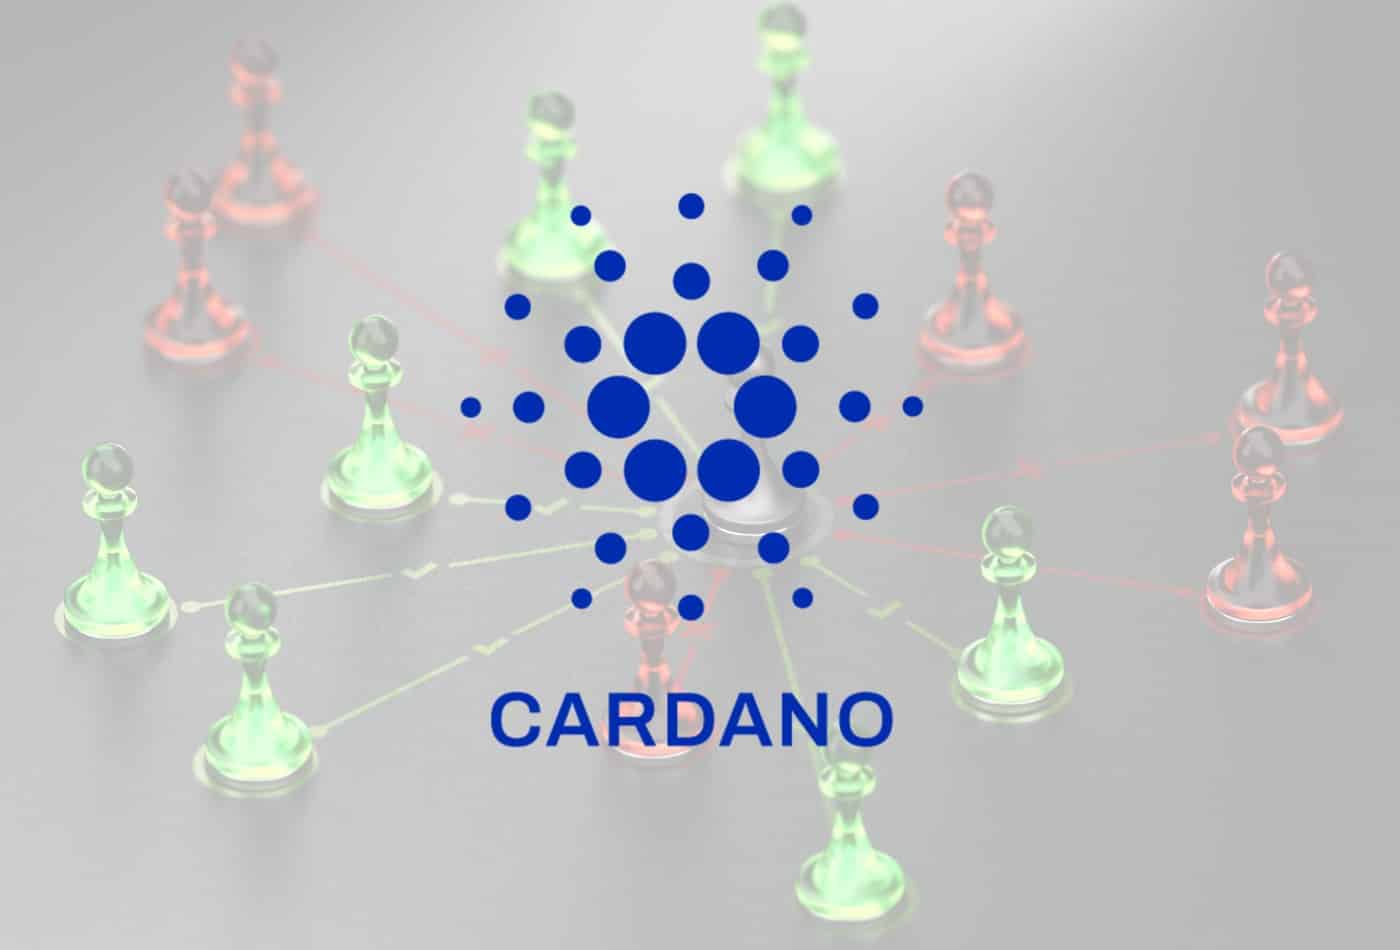 Will Cardano (ADA) Reach $100? New Price Prediction For 2022-2030